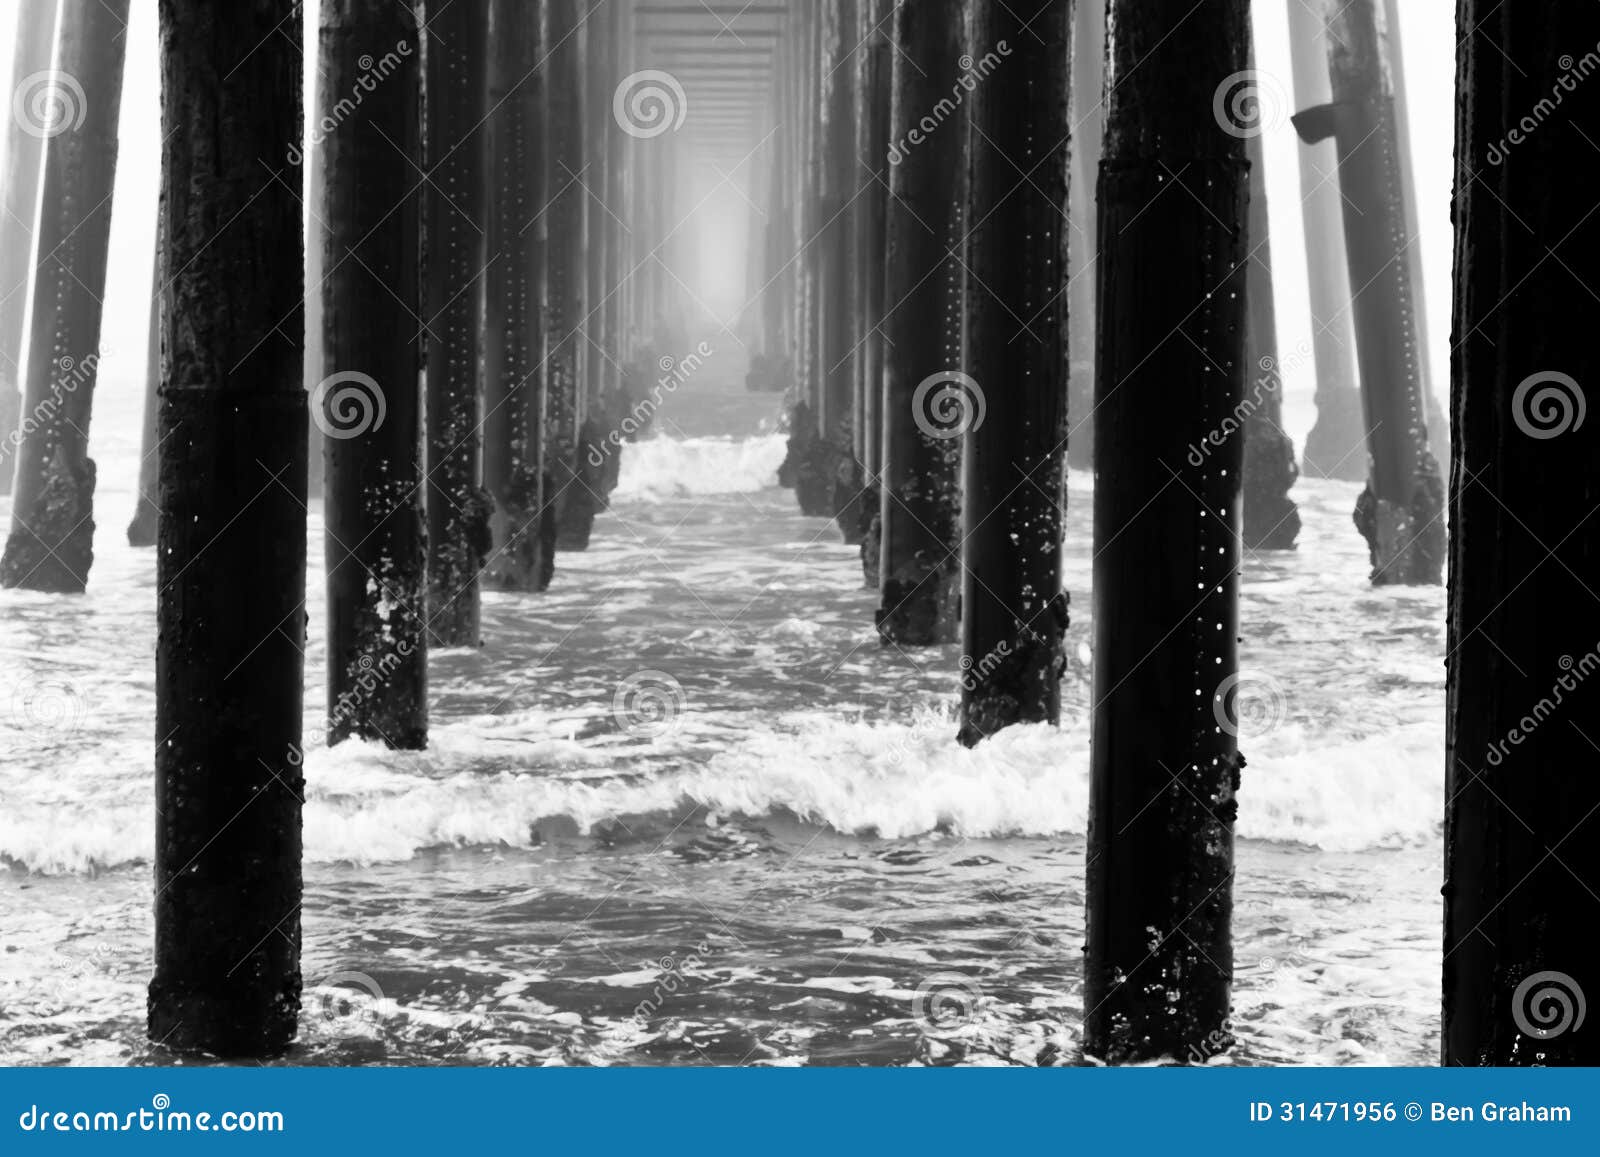 oceanside pier